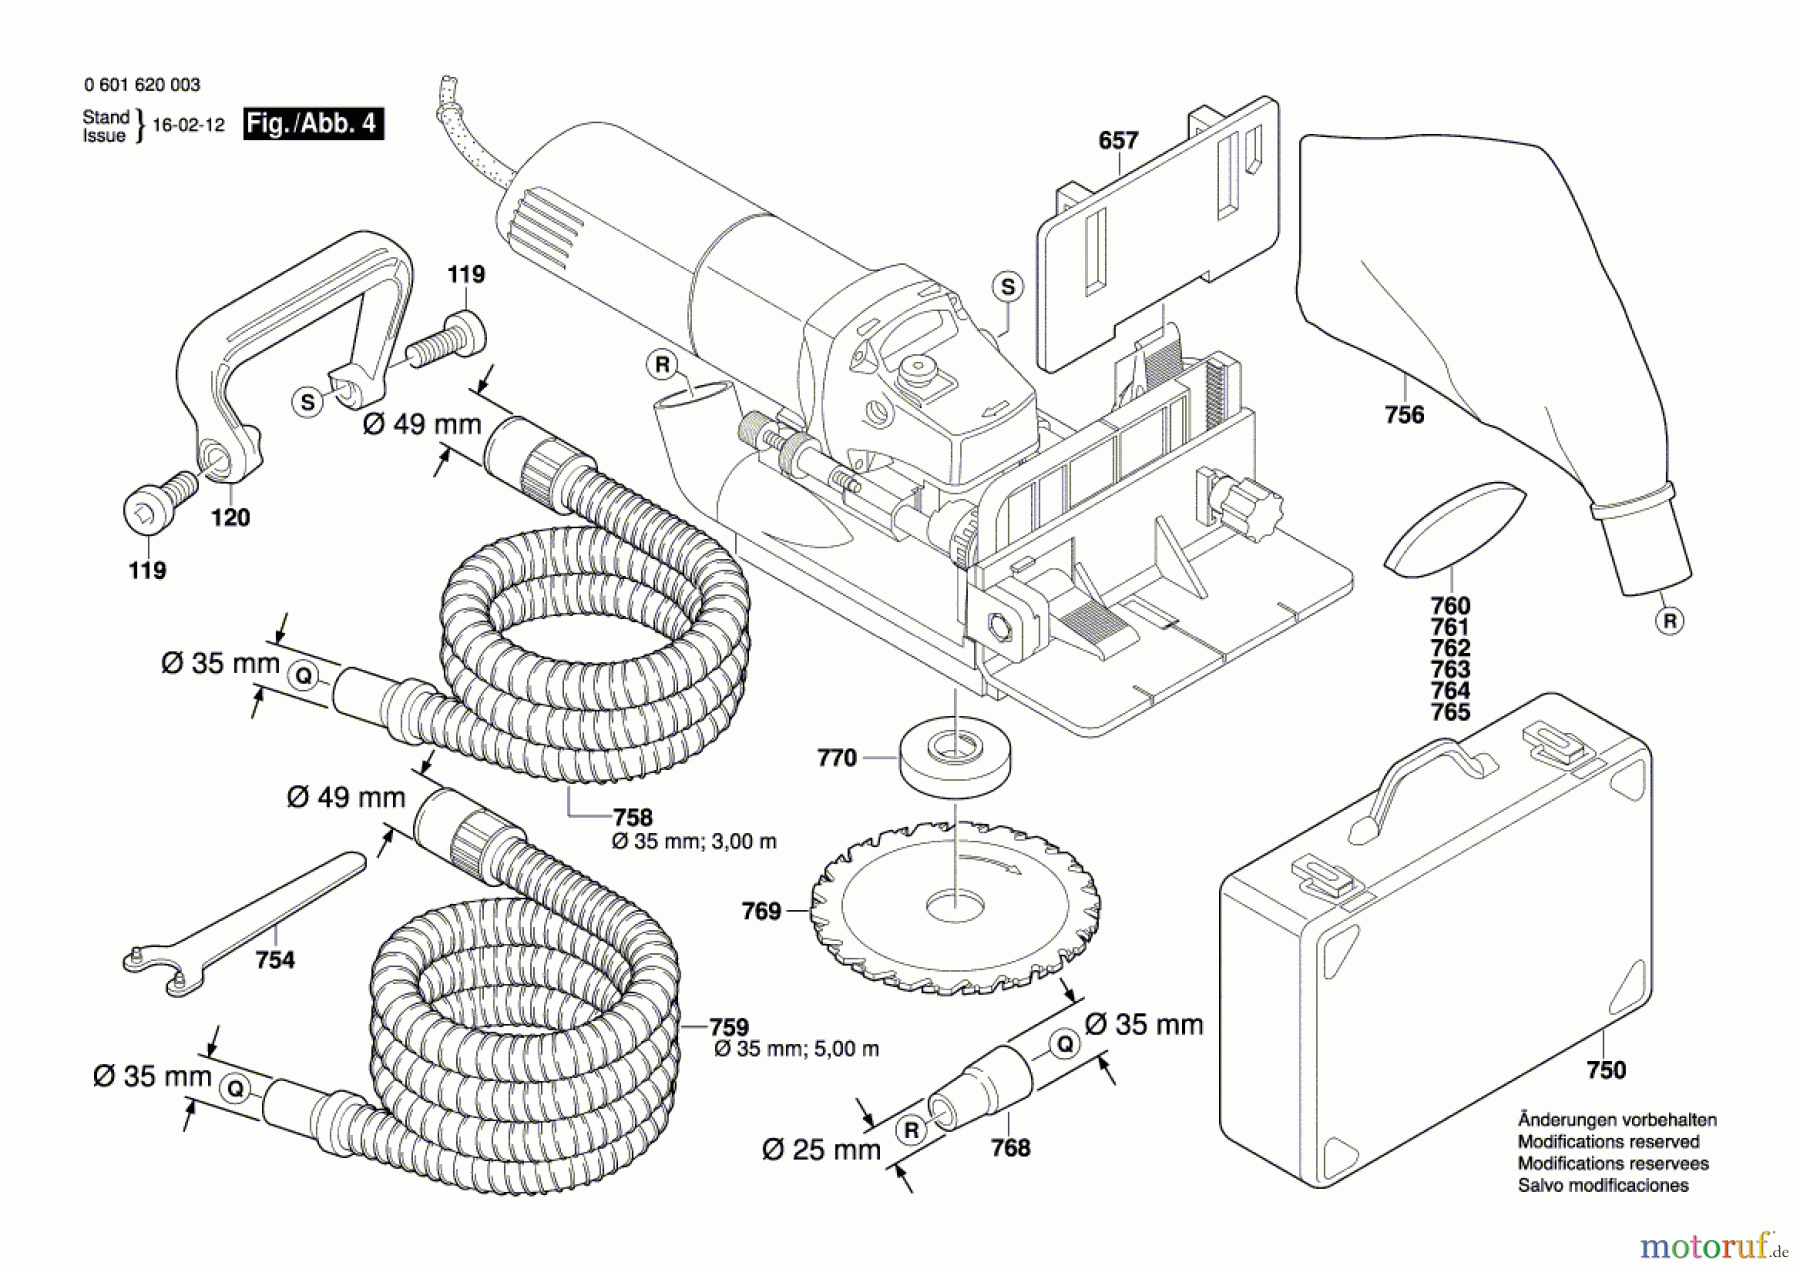  Bosch Werkzeug Flachdübelfräse GFF 22 A Seite 4